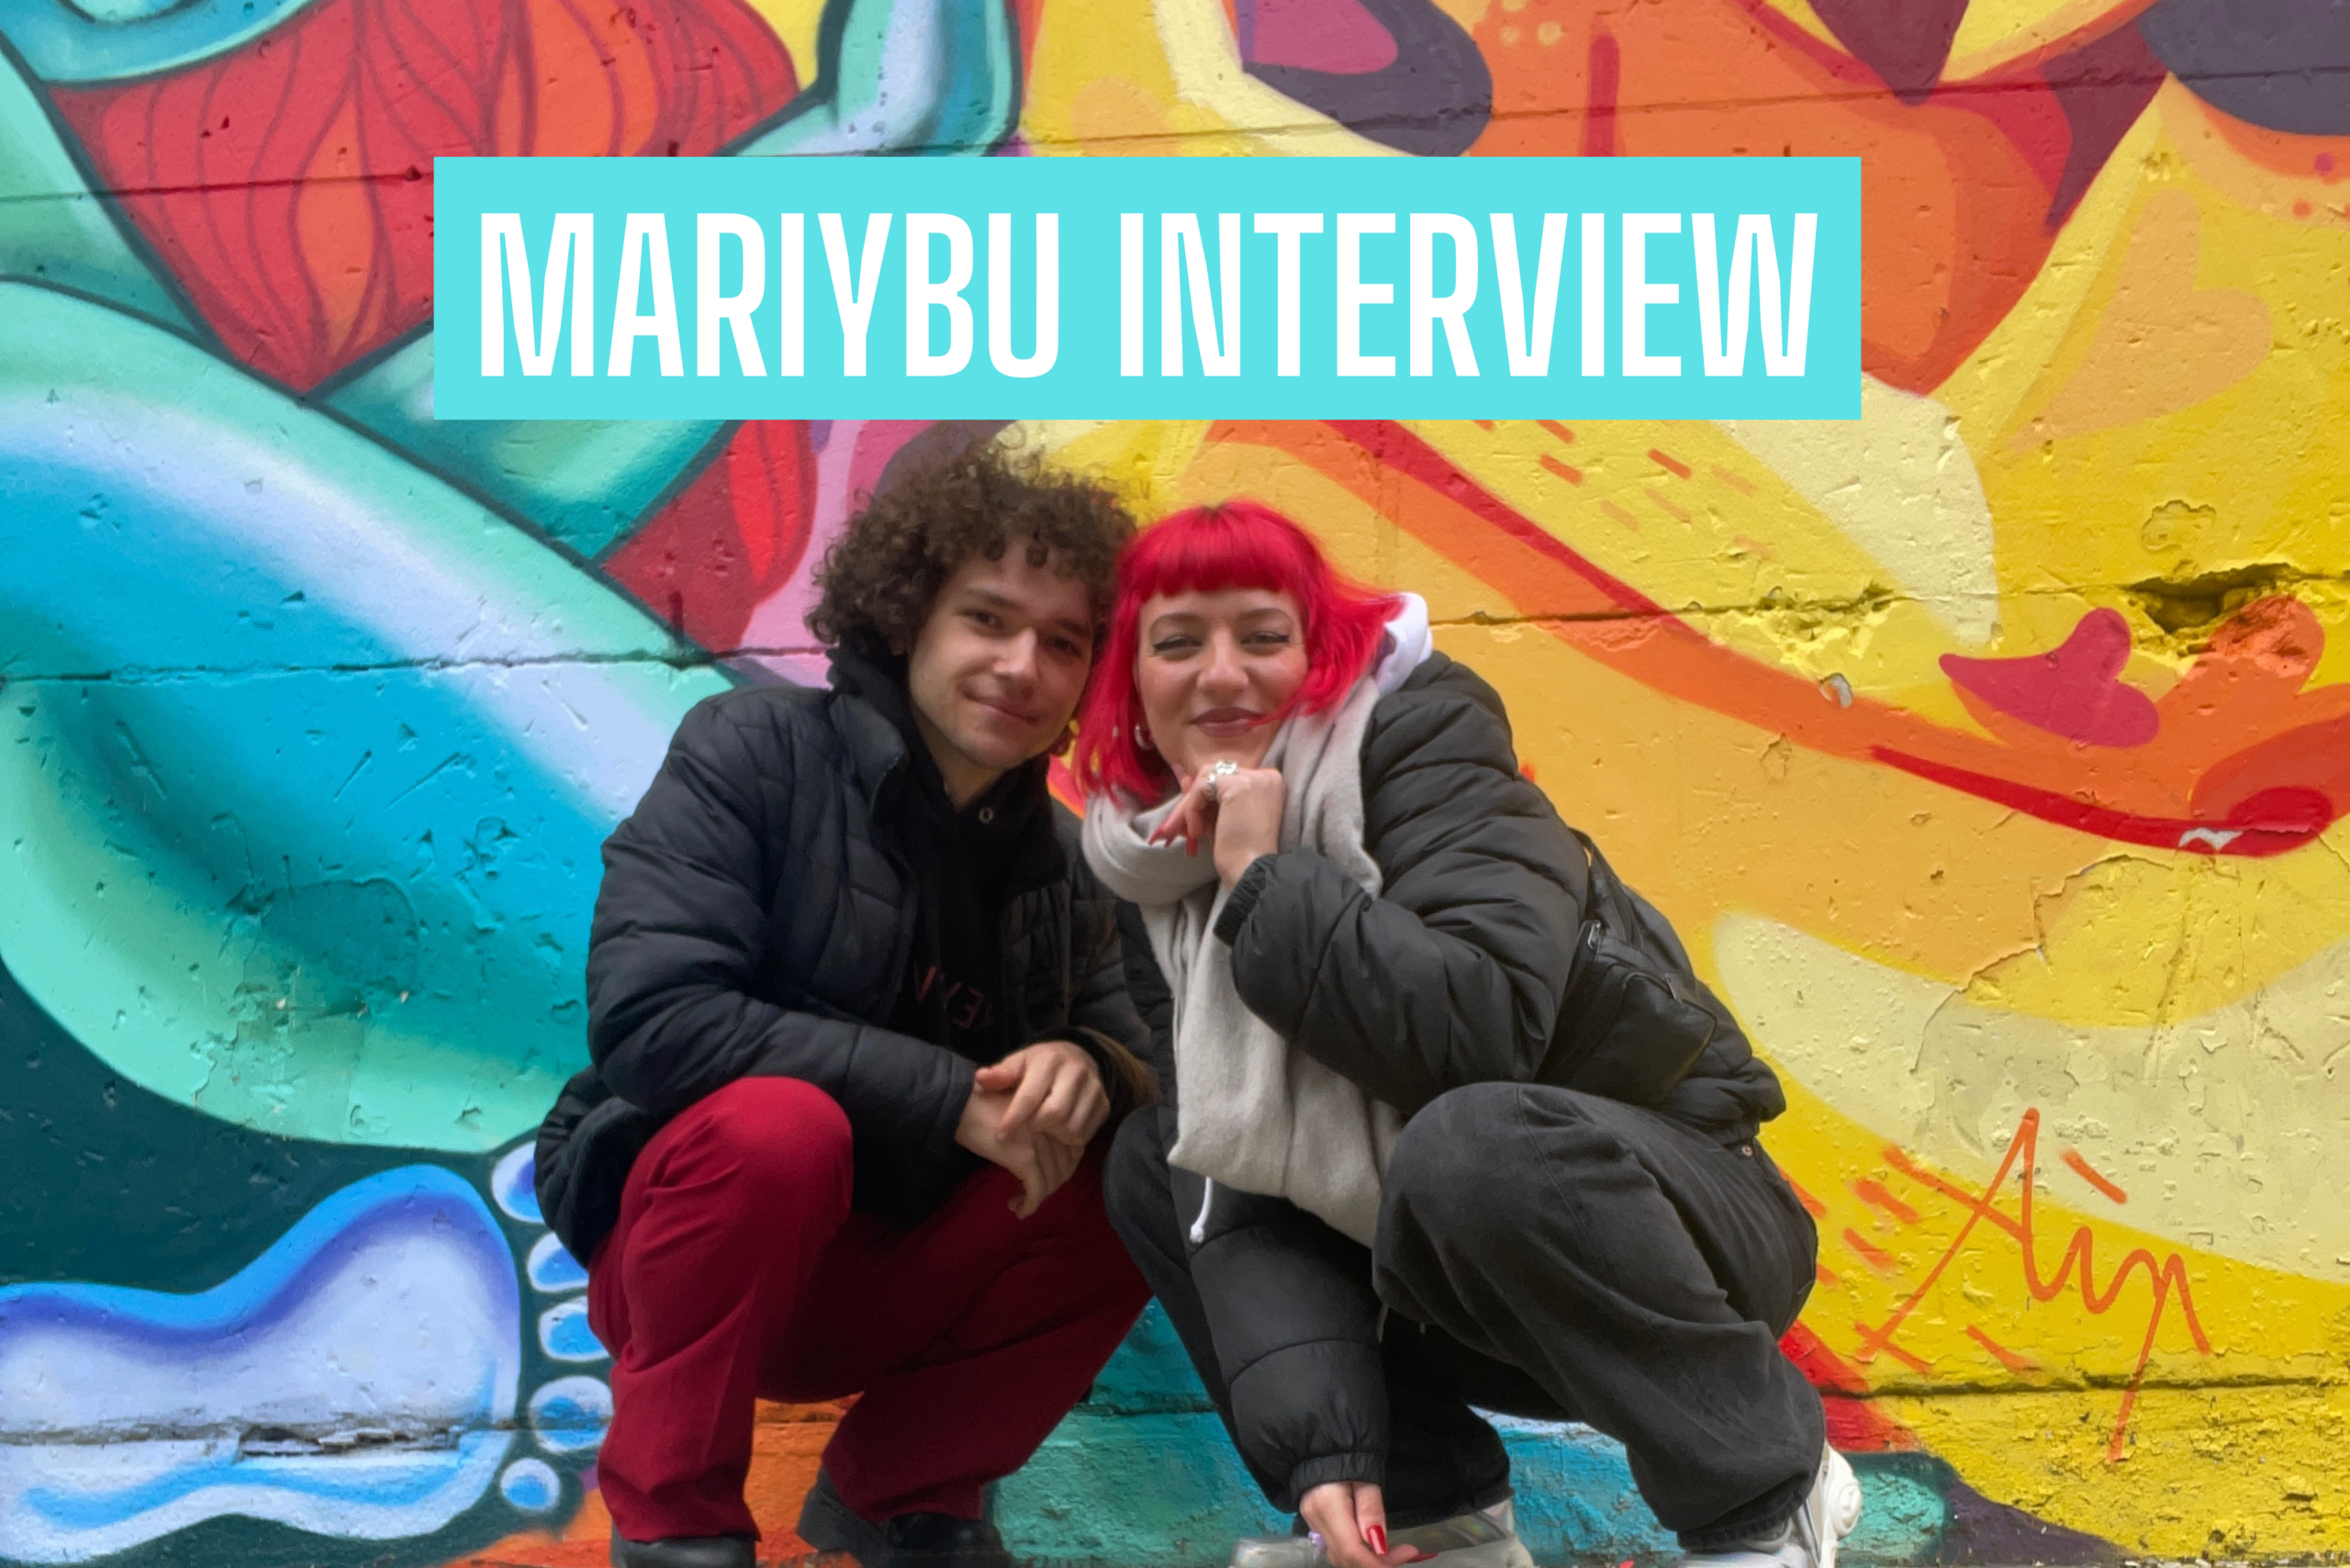 Mariybu über SLAYBAE, selbstbestimmten Sex und Hyperpop | Interview